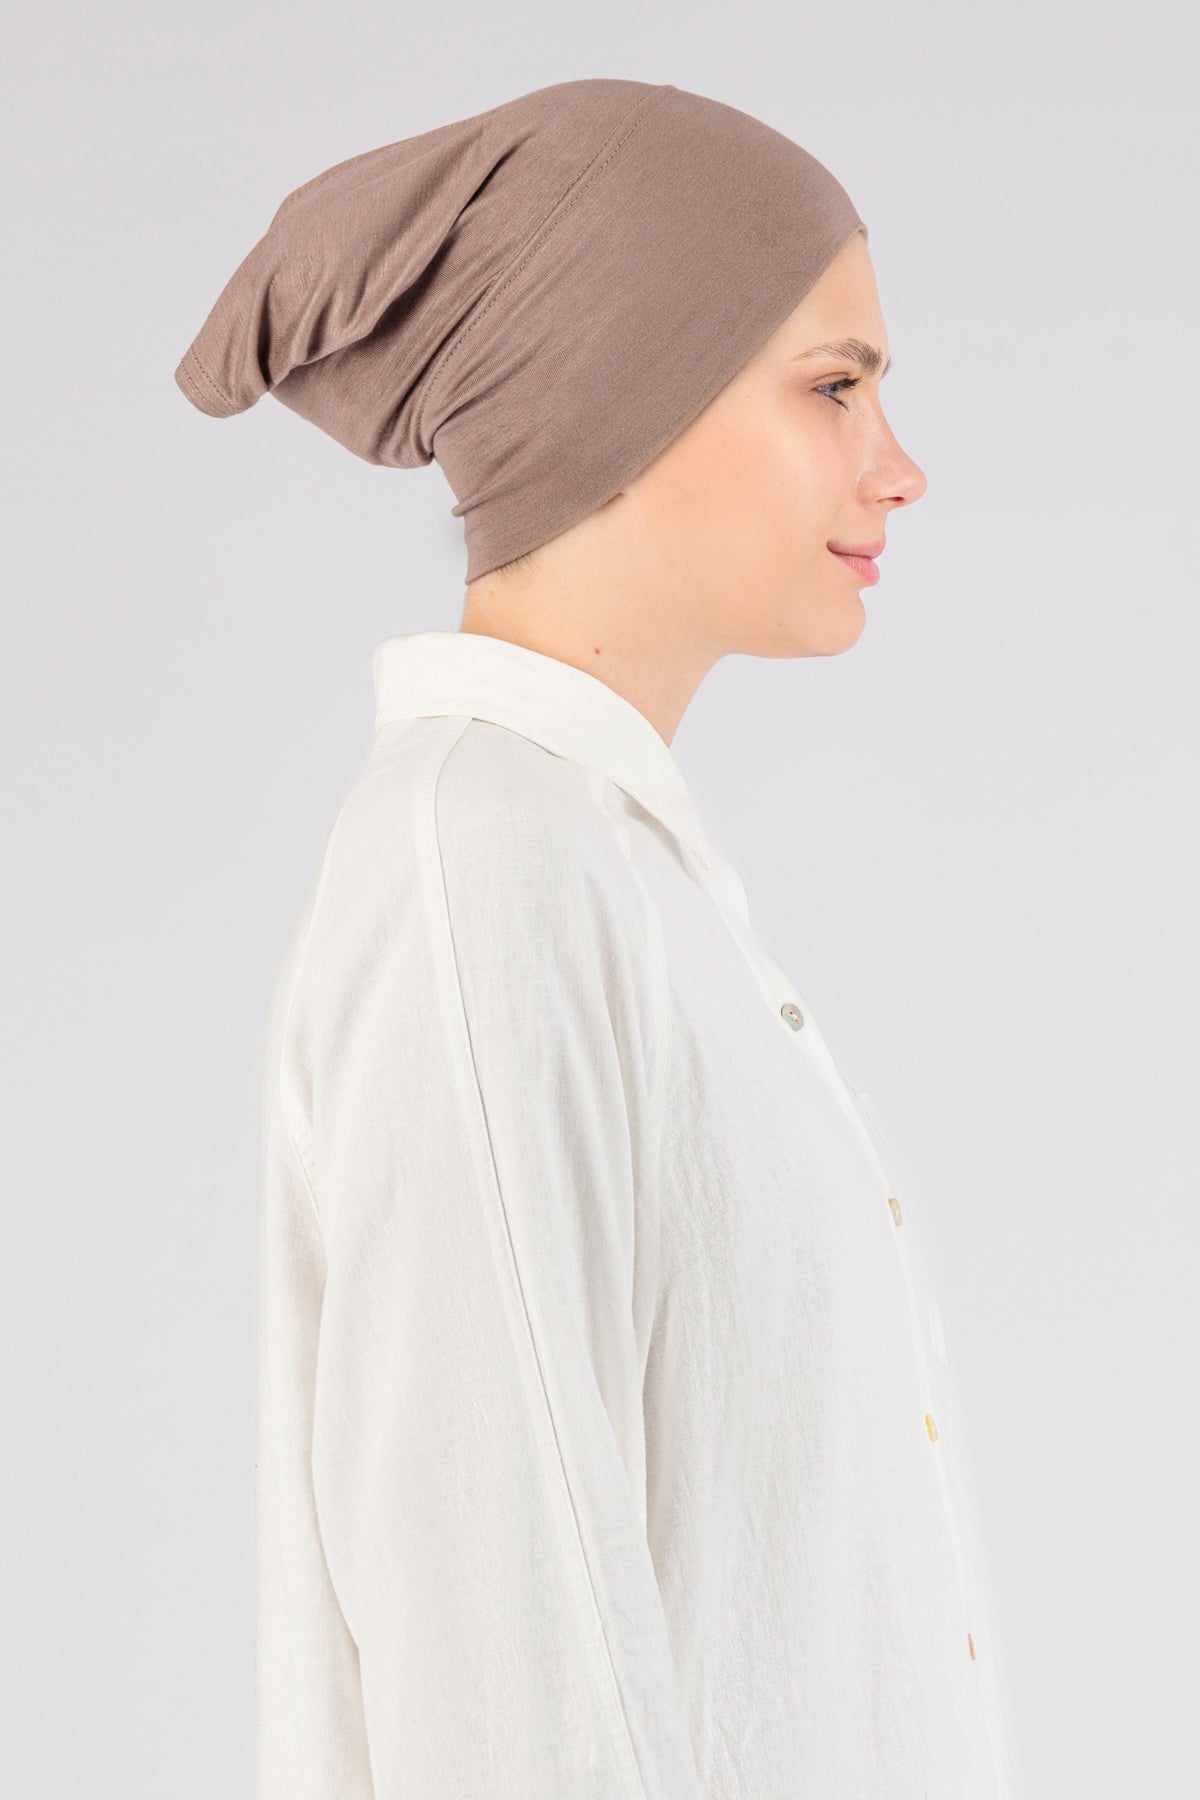 CA - Matching Jersey Hijab Set - Blush